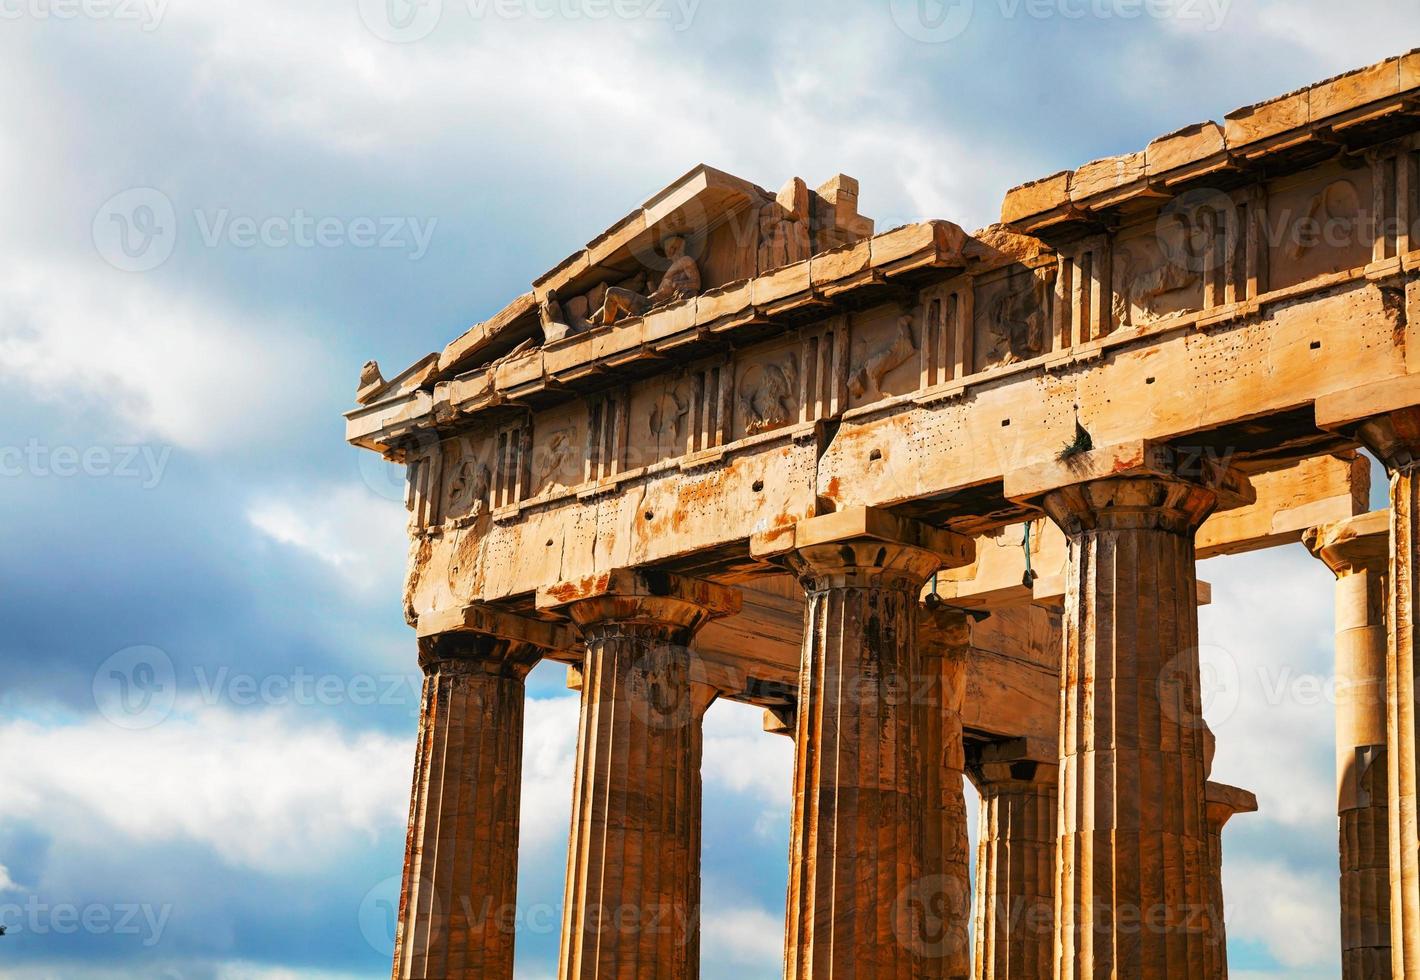 Partenone all'Acropoli di Atene, Grecia foto